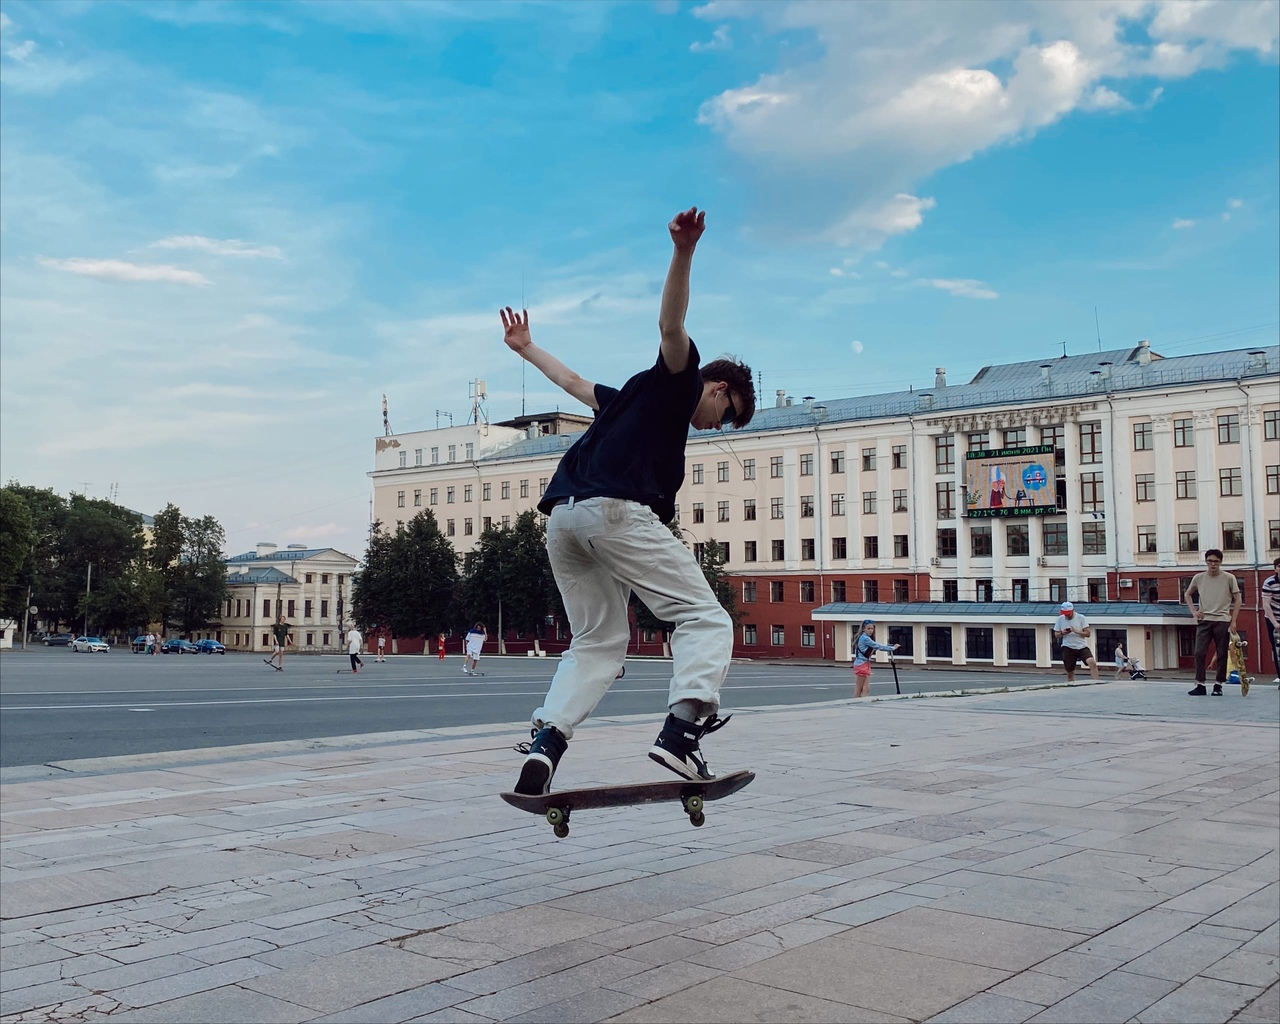 Прыжки с лестниц и денежные призы: в Кирове прошел праздник скейтбординга